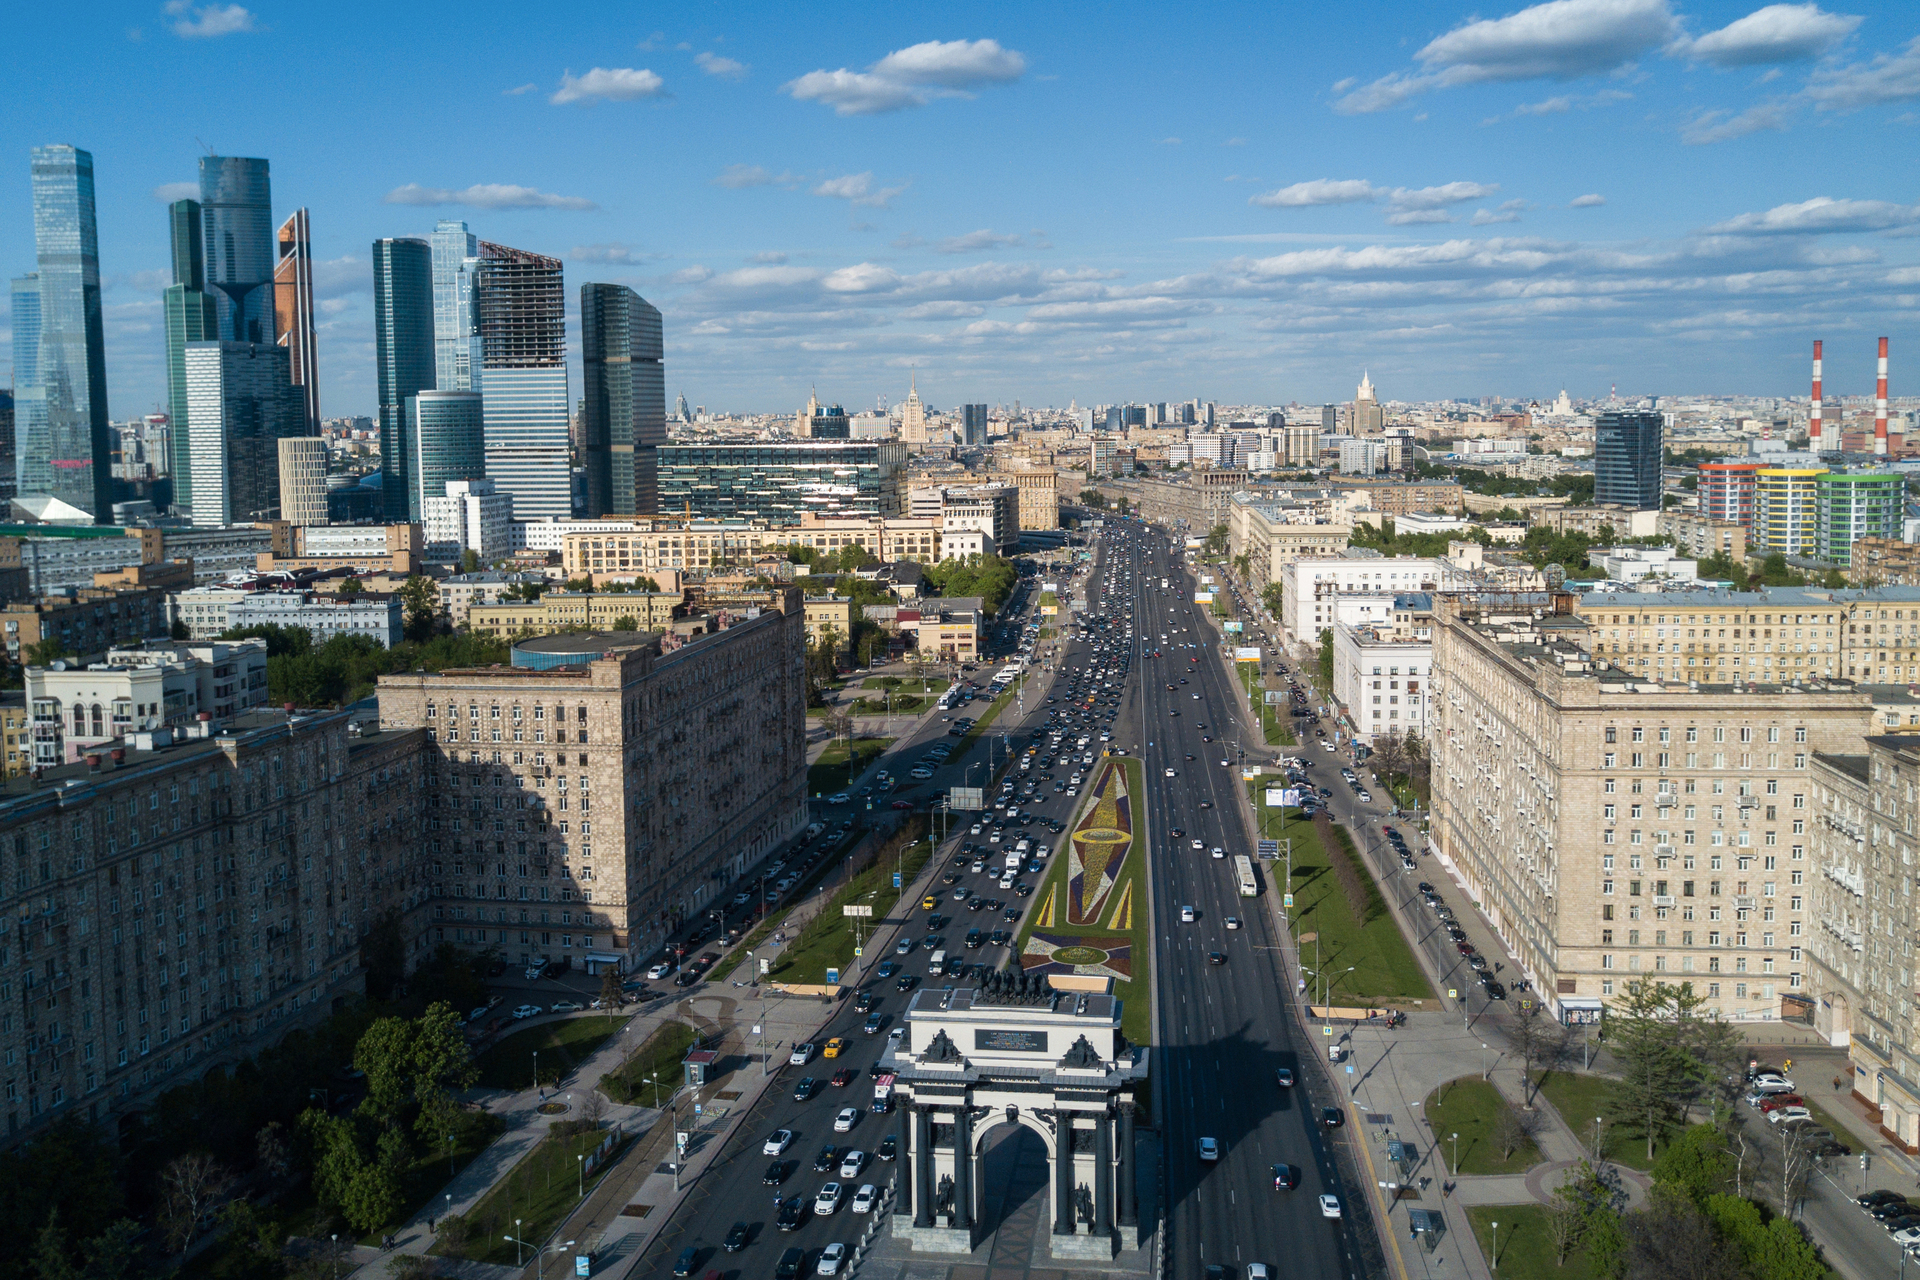 Автомобильное движение на Кутузовском проспекте в Москве